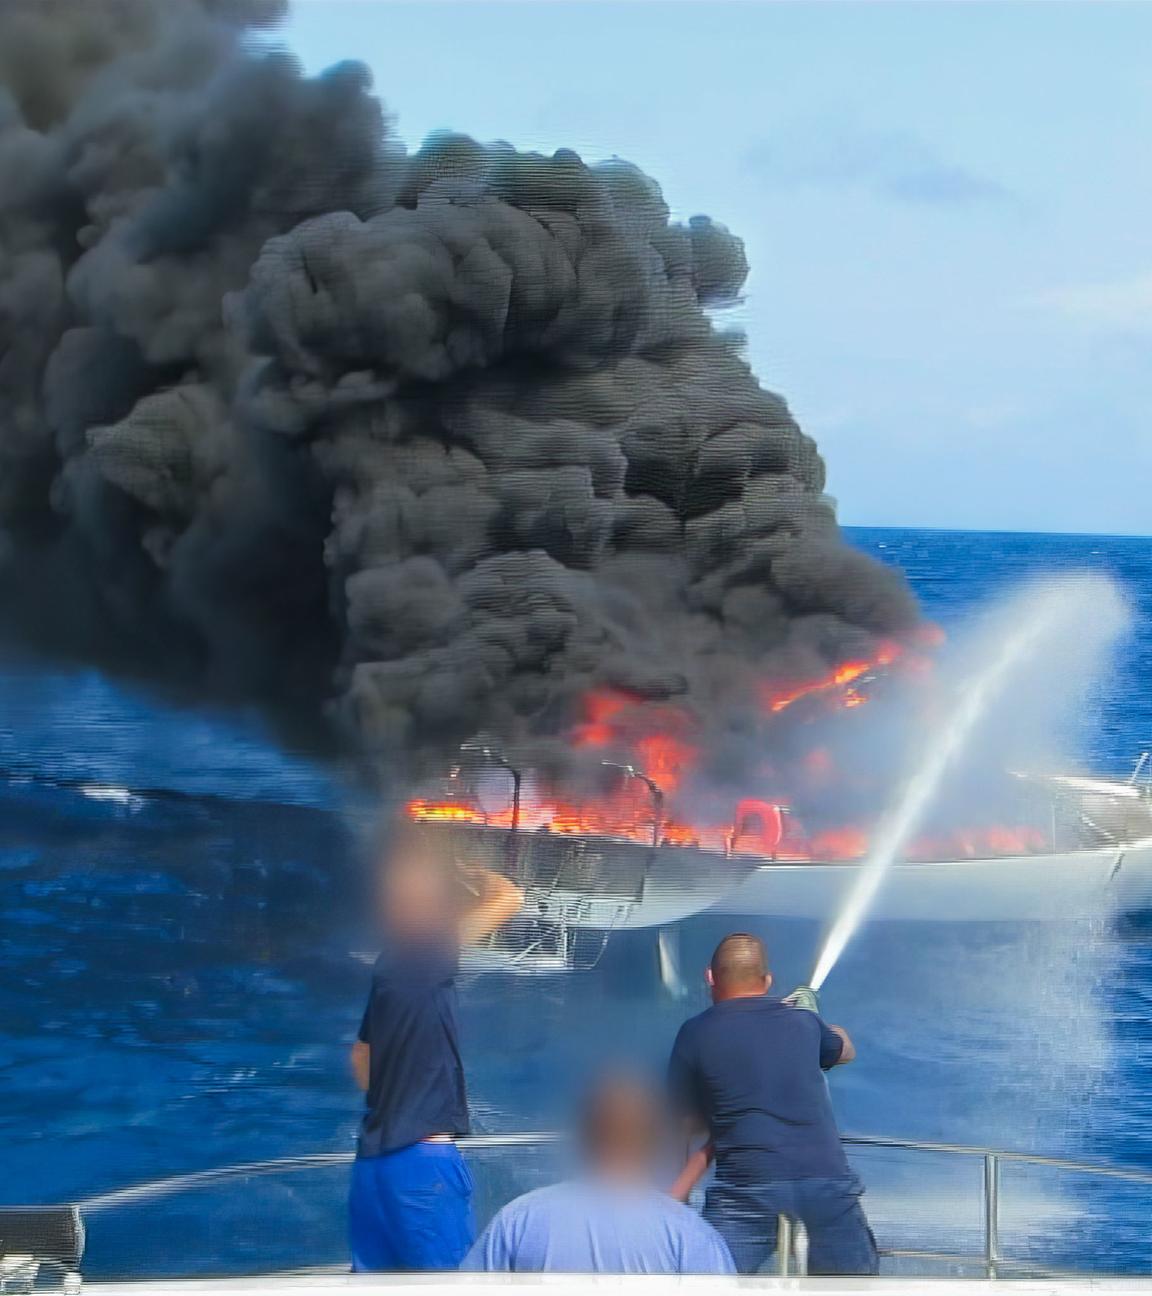 Ein Segelschiff auf hoher See steht in Flammen. Männer löschen es mit einem Schlauch von einem anderen Schiff aus.